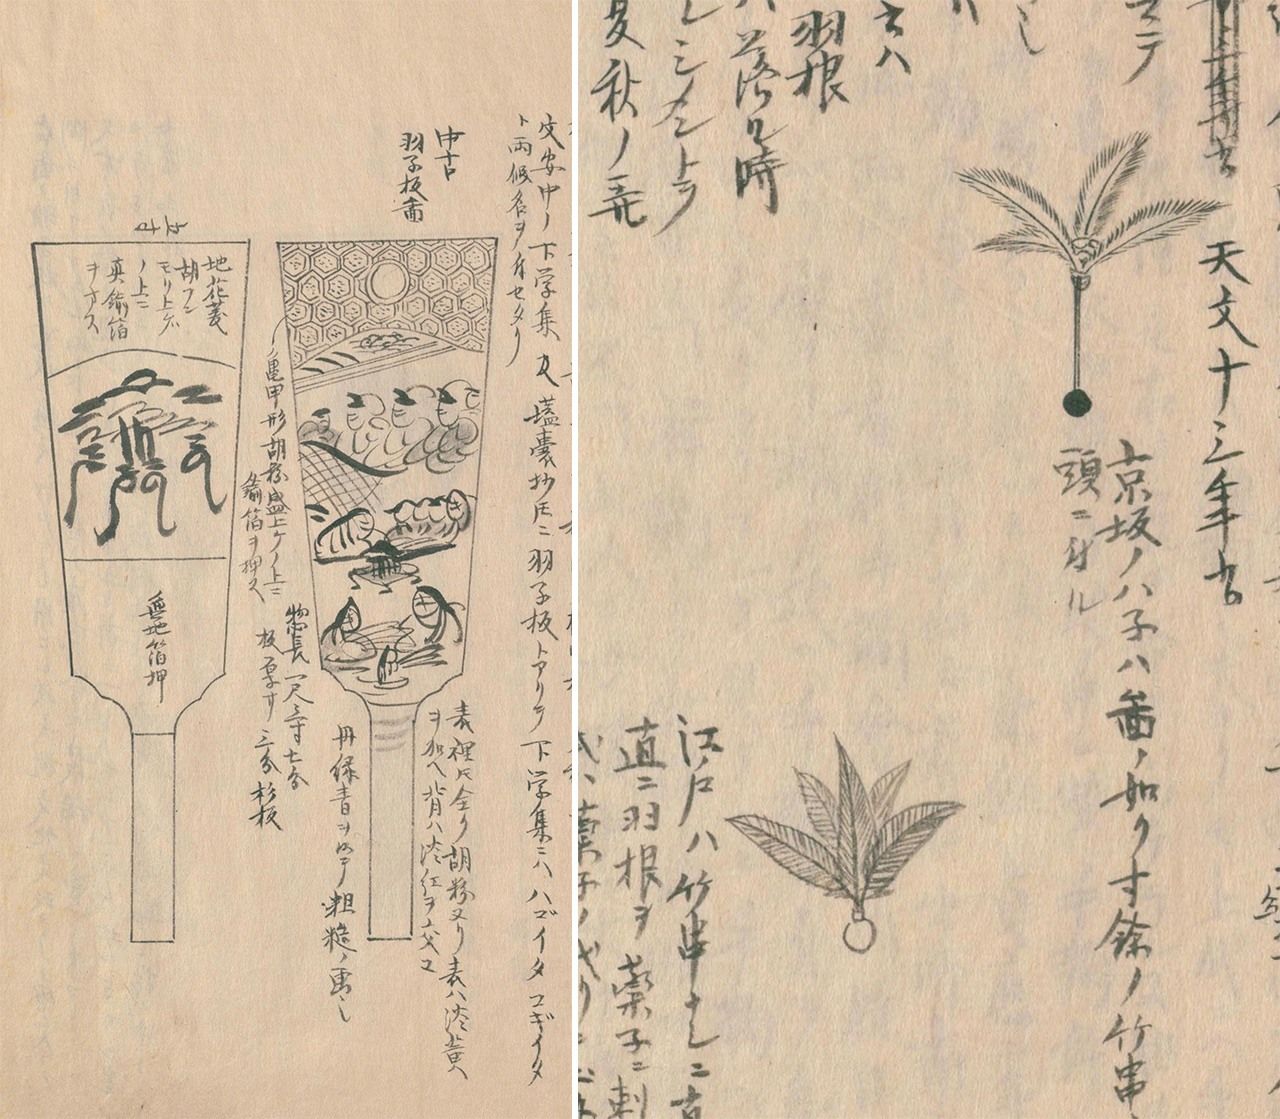 文化文政期（1804-1831年）左右的“羽子板”和“羽”。羽子板两面画着江户风情的图案。羽根，上面是京坂（上方）的，下面是江户的造型。京坂的小球上插着一根长竹签，跟羽毛相连，江户的则没有竹签